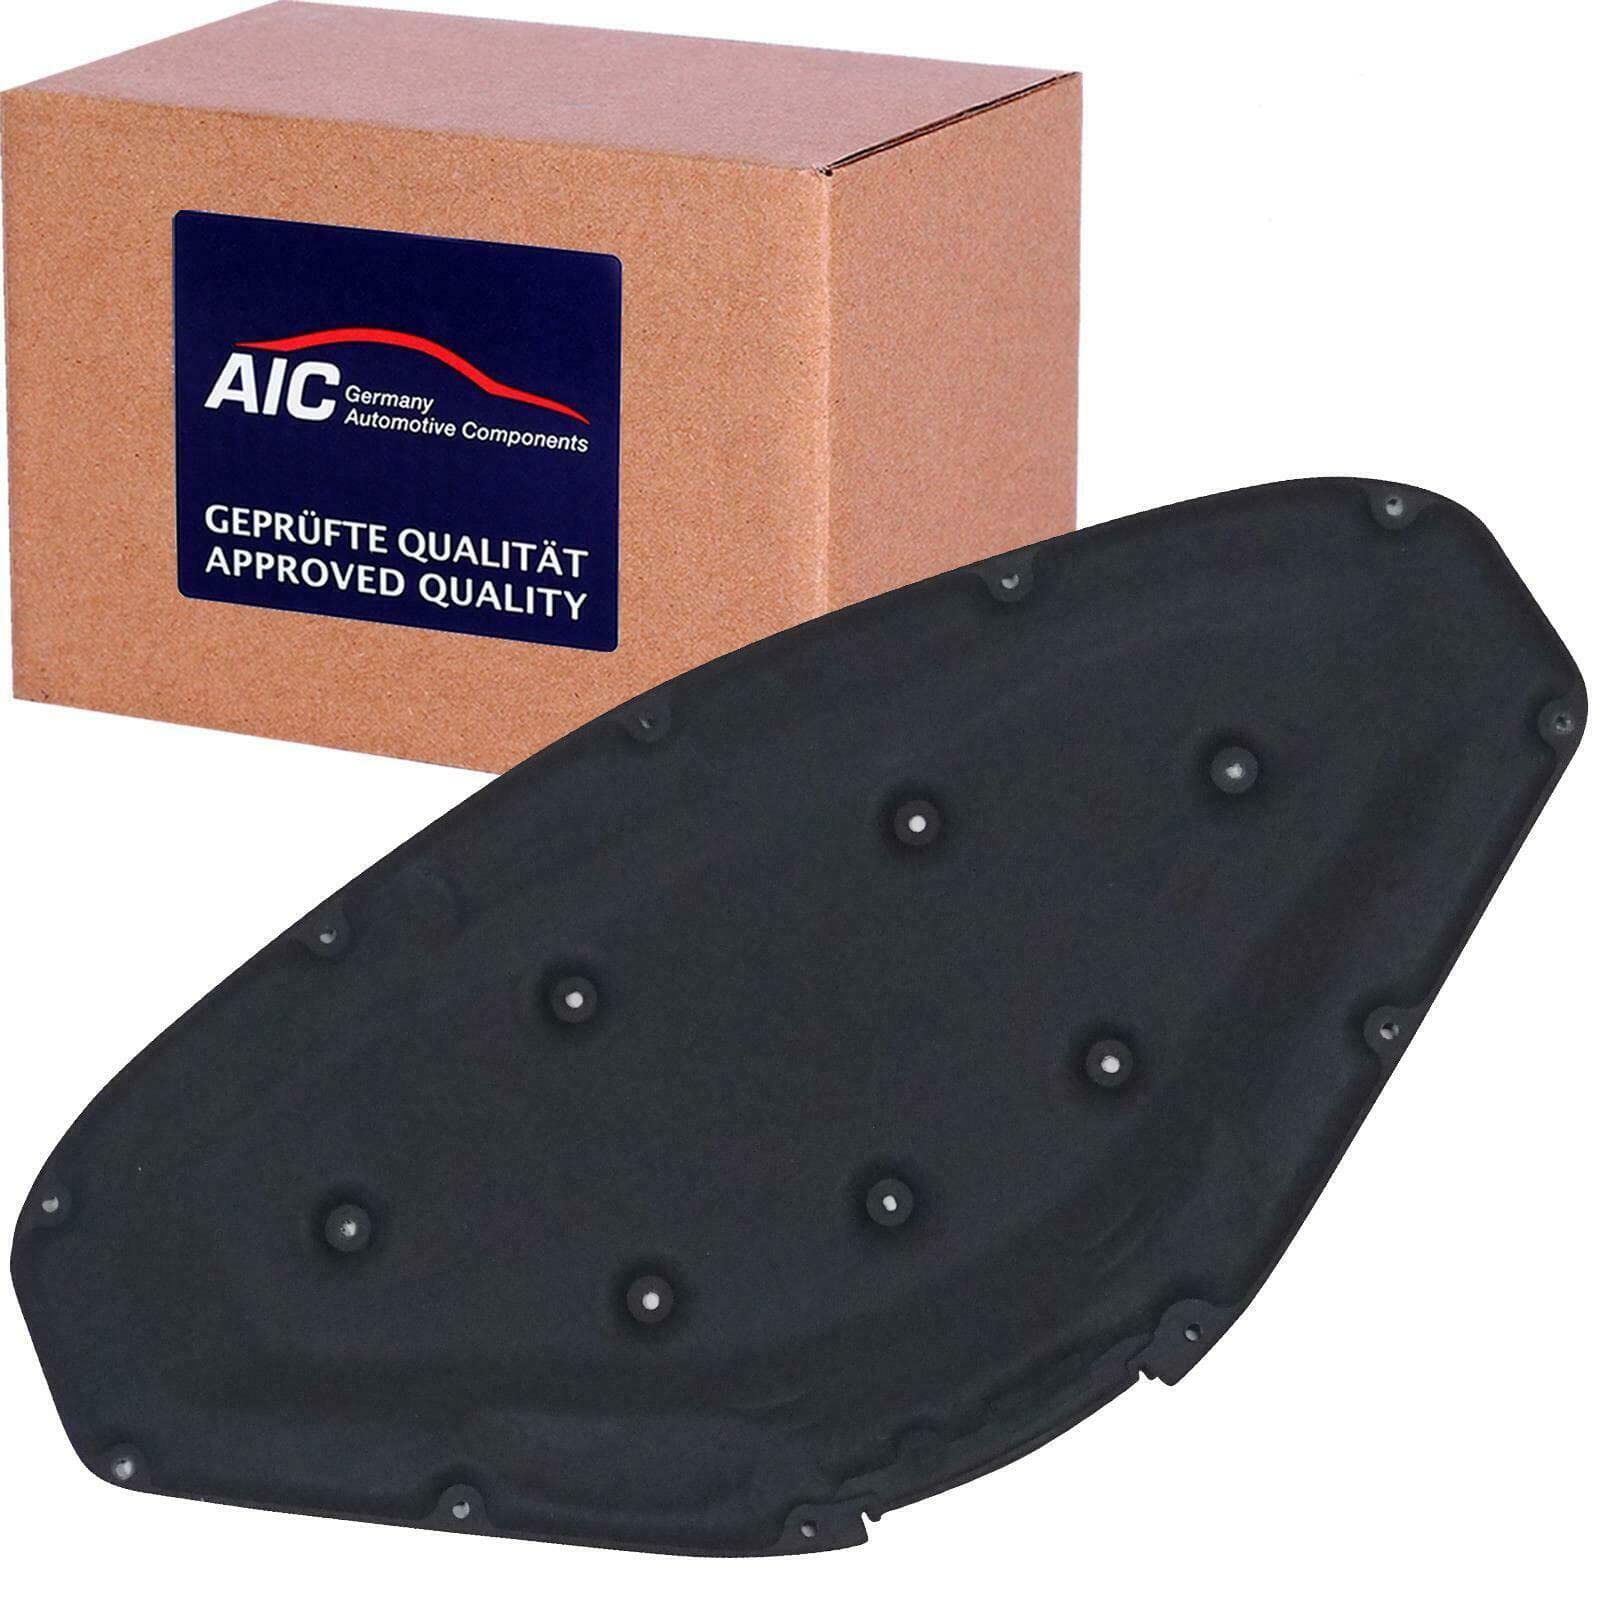 Motorraumdämmung Original AIC Quality Motorhaube von AIC (57436) Schalldämmung Karosserie Dämpfung, Motorraum, Dämpfung, Dämmung, Geräuschdämmung von AIC